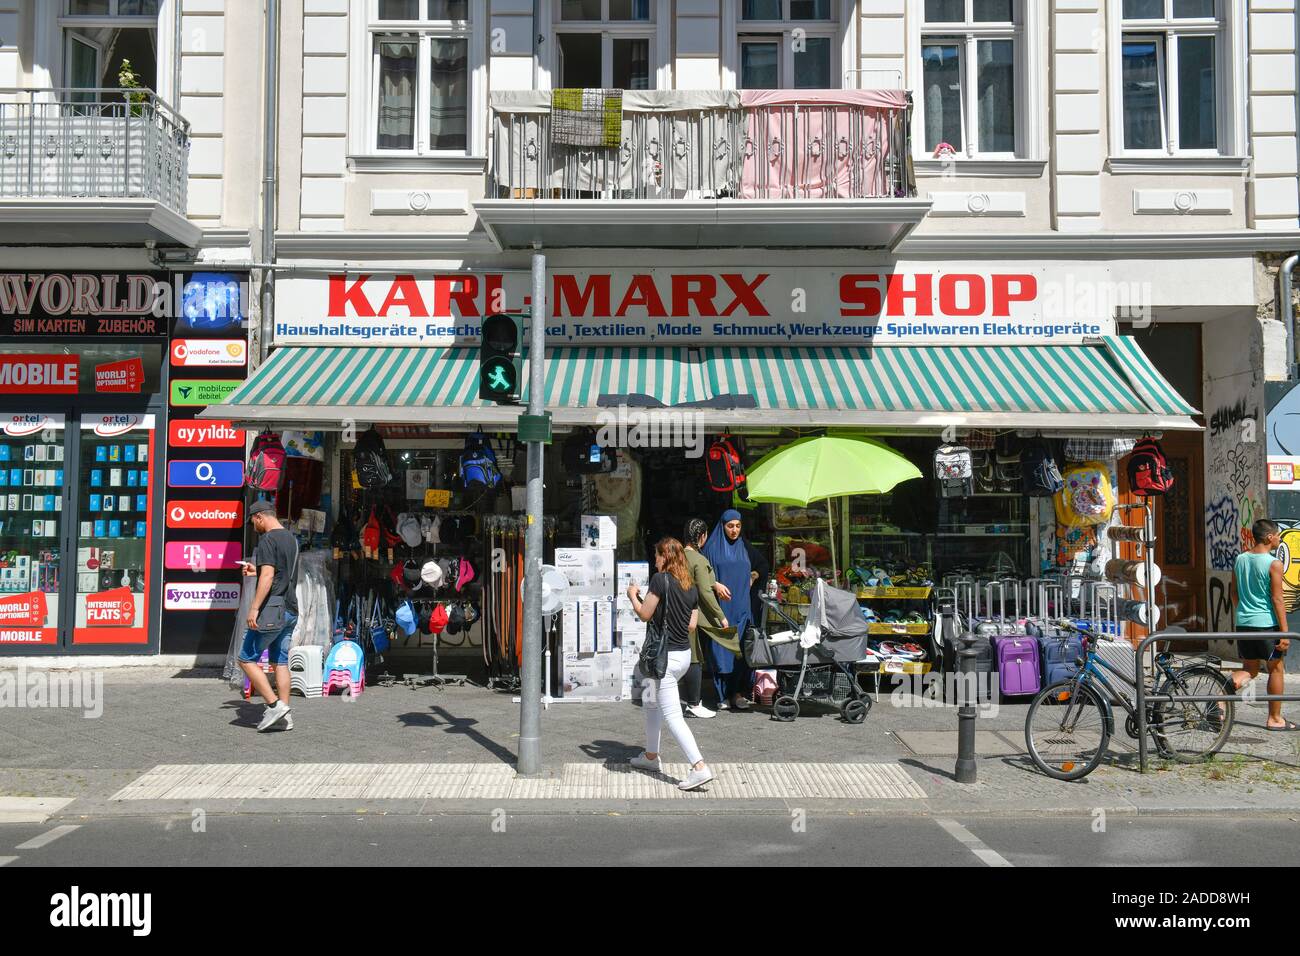 Straßenszene, Karl-Marx-Straße, Neukölln, Berlin, Deutschland Banque D'Images